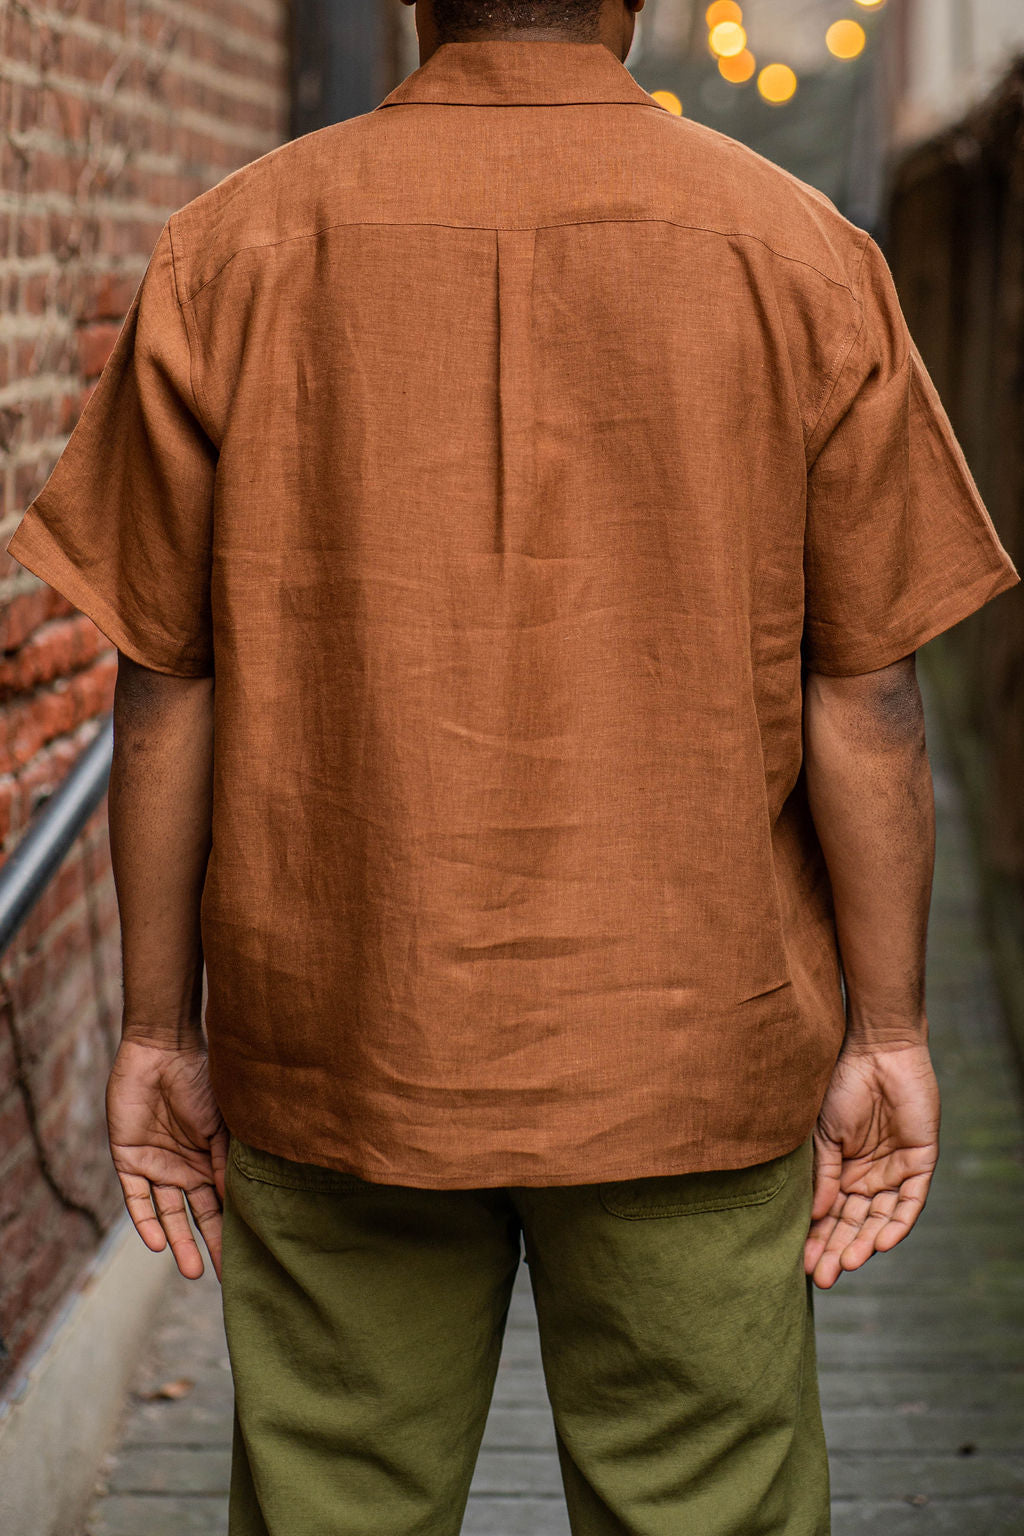 Blluemade Spread Collar Shirt - Leather Belgian Linen